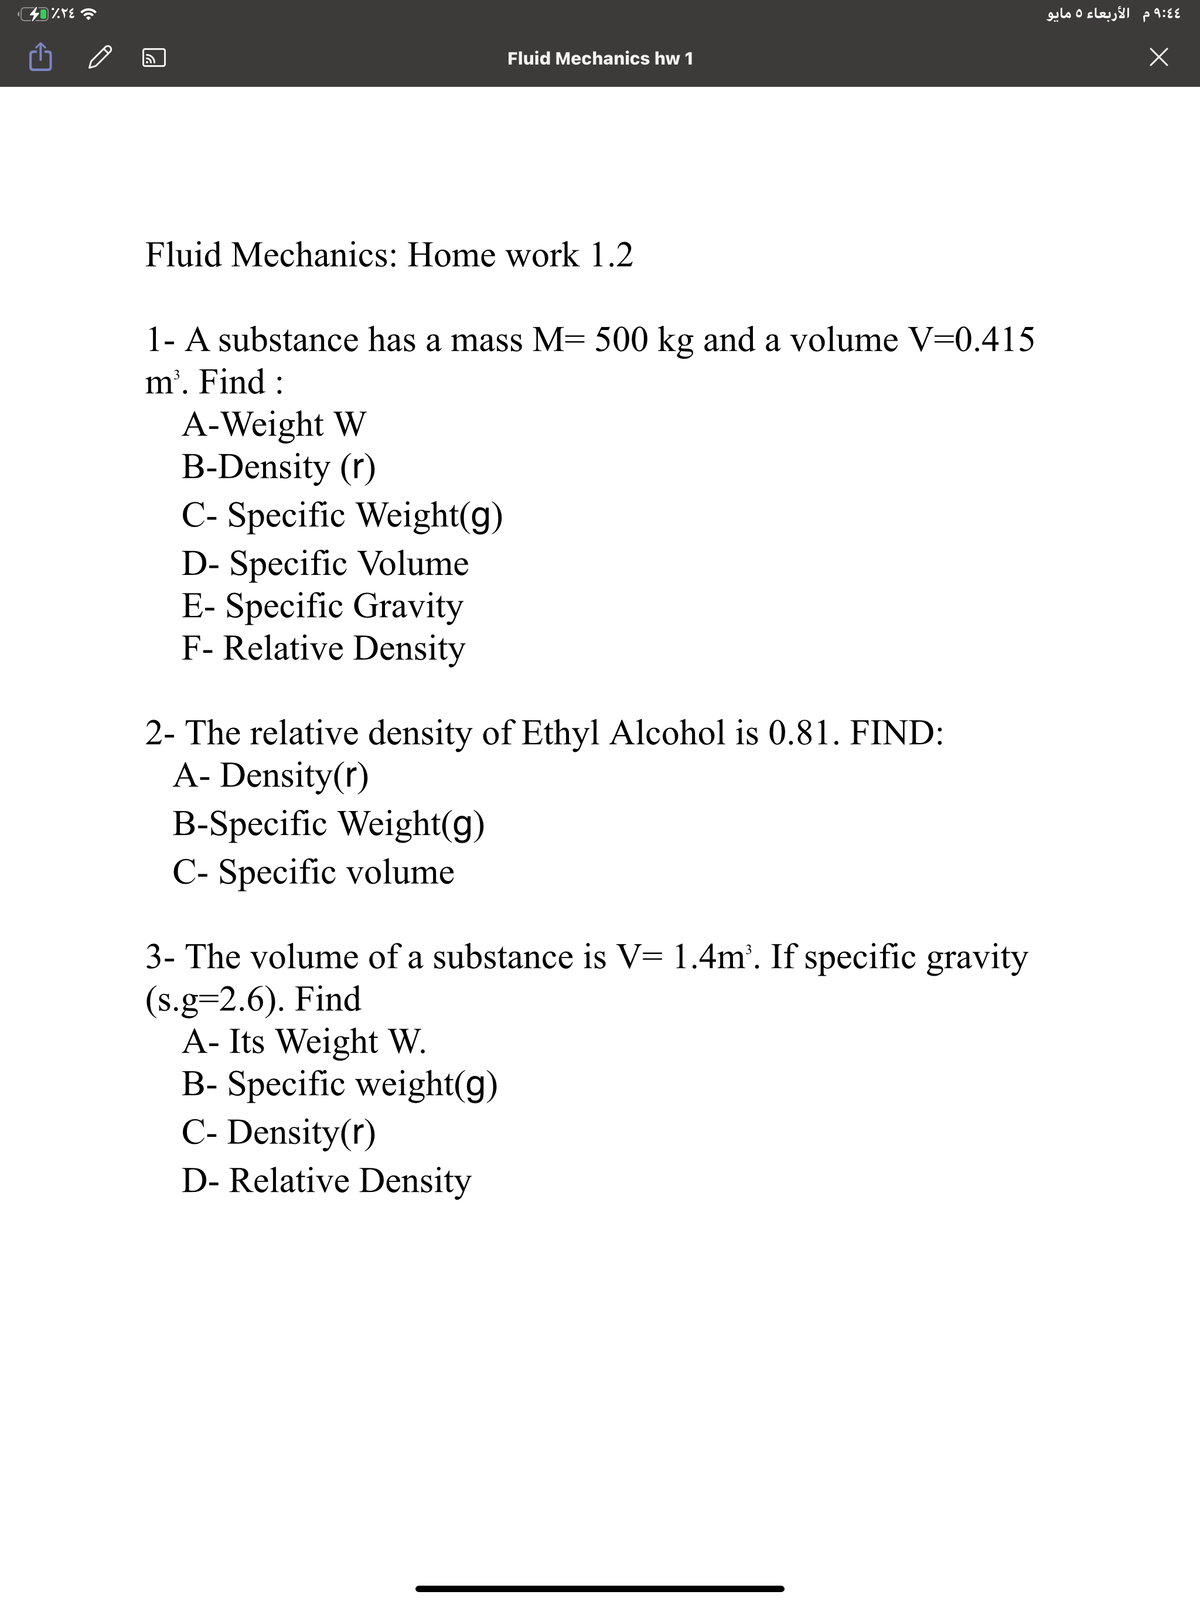 4 9:4 م الأربعاء 5 مايو
Fluid Mechanics hw 1
Fluid Mechanics: Home work 1.2
1- A substance has a mass M= 500 kg and a volume V=0.415
m'. Find :
A-Weight W
B-Density (r)
C- Specific Weight(g)
D- Specific Volume
E- Specific Gravity
F- Relative Density
2- The relative density of Ethyl Alcohol is 0.81. FIND:
A- Density(r)
B-Specific Weight(g)
C- Specific volume
3- The volume of a substance is V= 1.4m'. If specific gravity
(s.g=2.6). Find
A- Its Weight W.
B- Specific weight(g)
C- Density(r)
D- Relative Density
